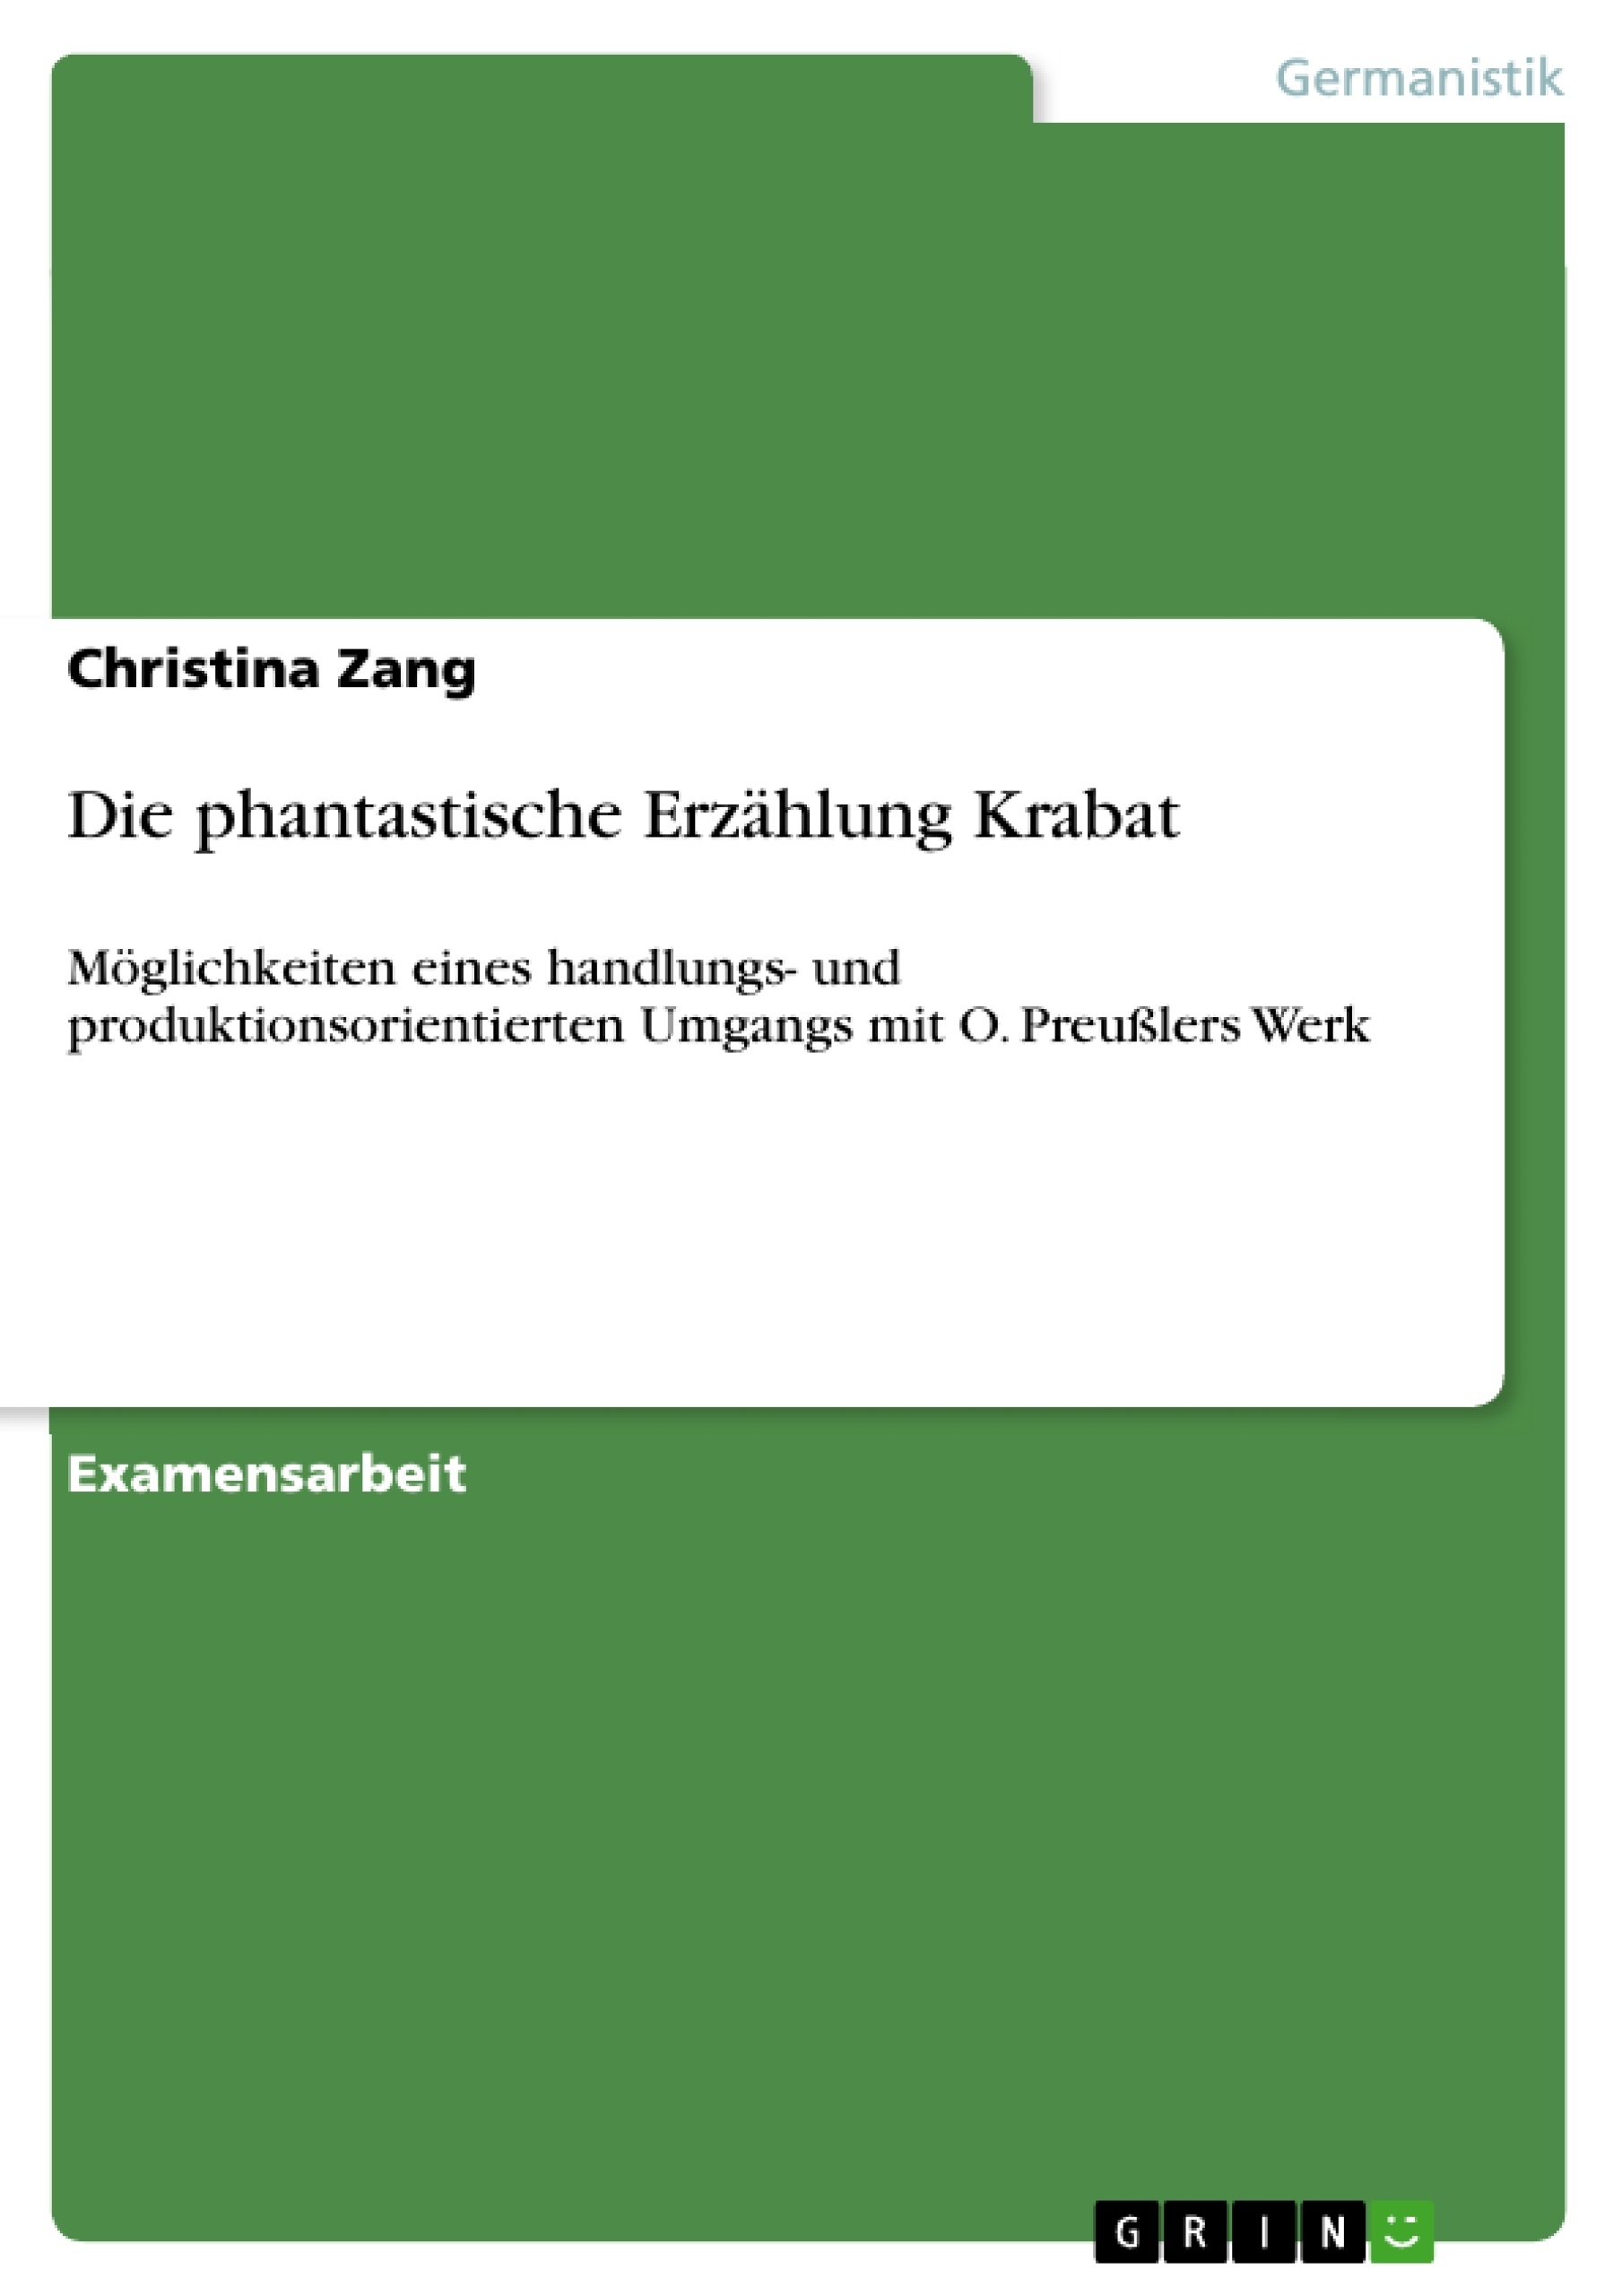 Title: Die phantastische Erzählung Krabat